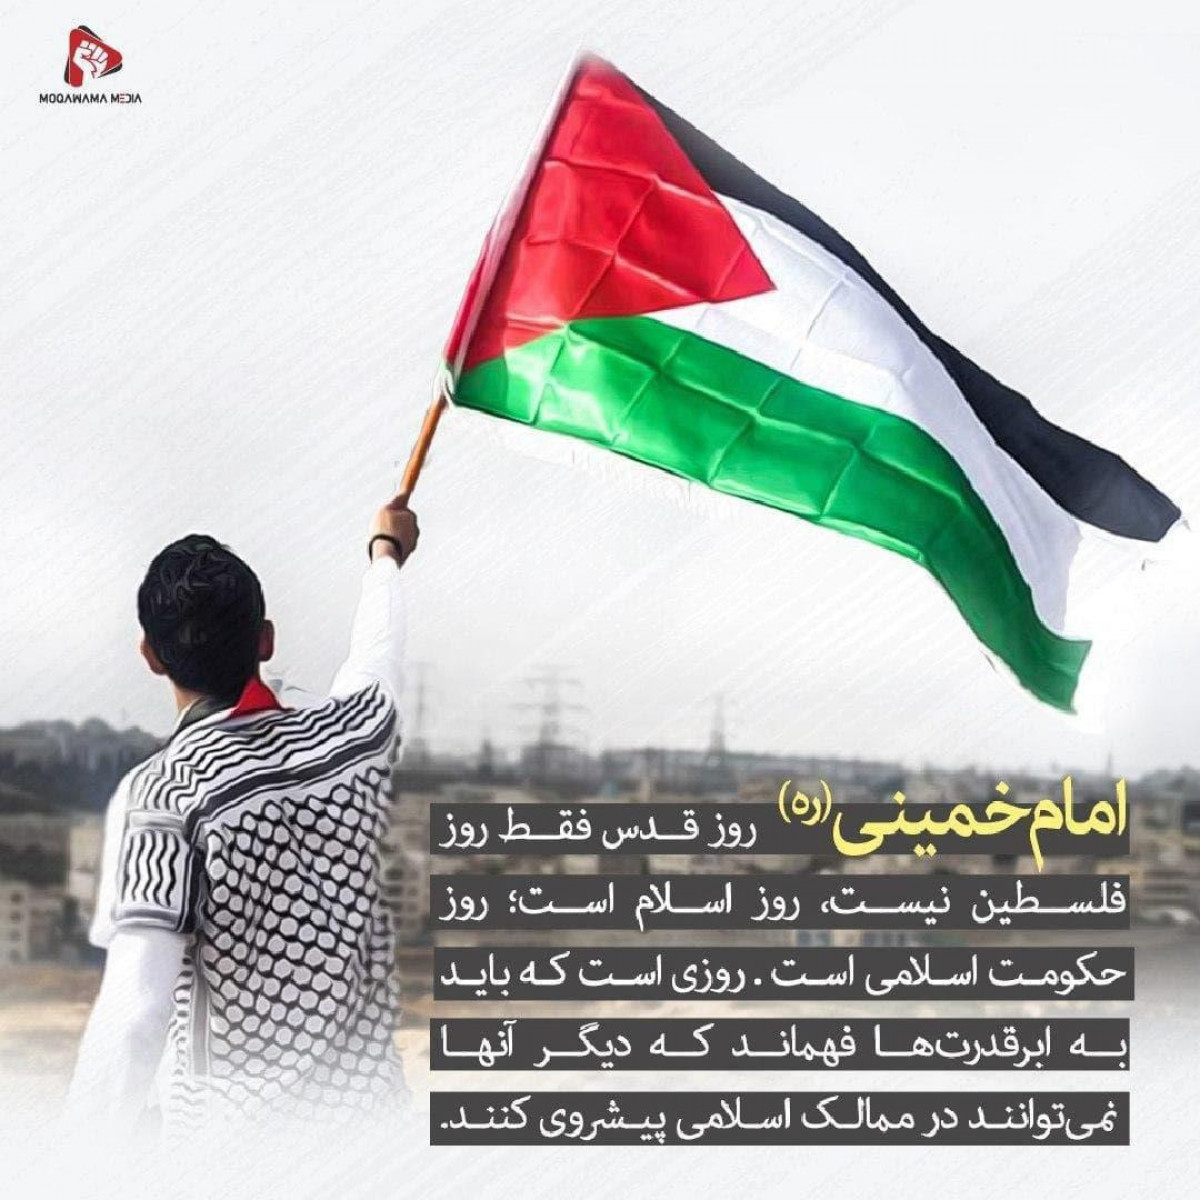 پوستر : امام خمینی (ره)  روز قدس، فقط روز فلسطین نیست، روز اسلام است؛ روز حکومت اسلامی است